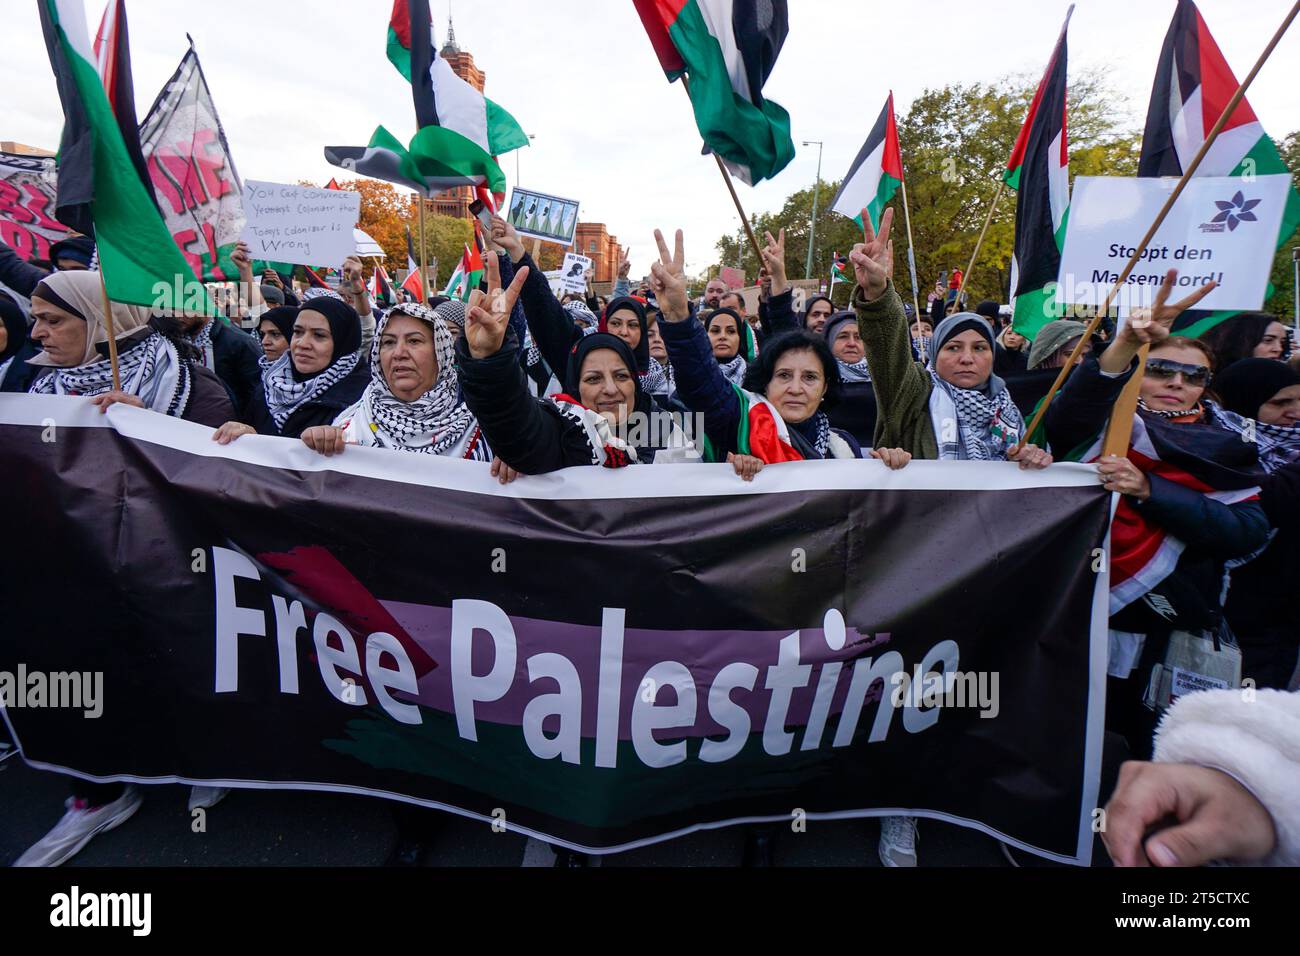 Pro-palästinensische und linksradikale Vereine demonstrieren am Neptunbrunnen beim Alexanderplatz a Berlino-Mitte. Der Demonstrationszug führte unter Foto Stock